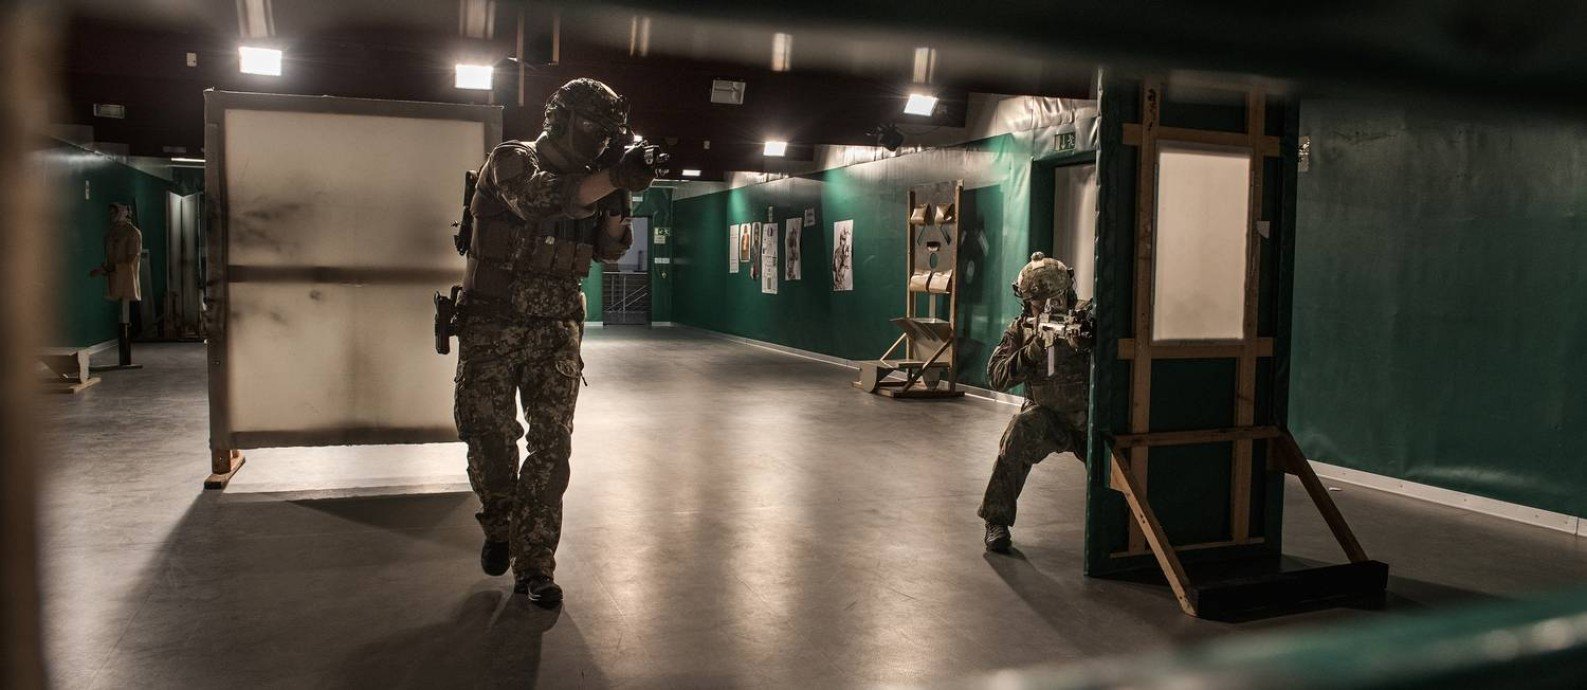 Neonazistas galgam posições no Exército da Alemanha e país caça 'inimigo interno'